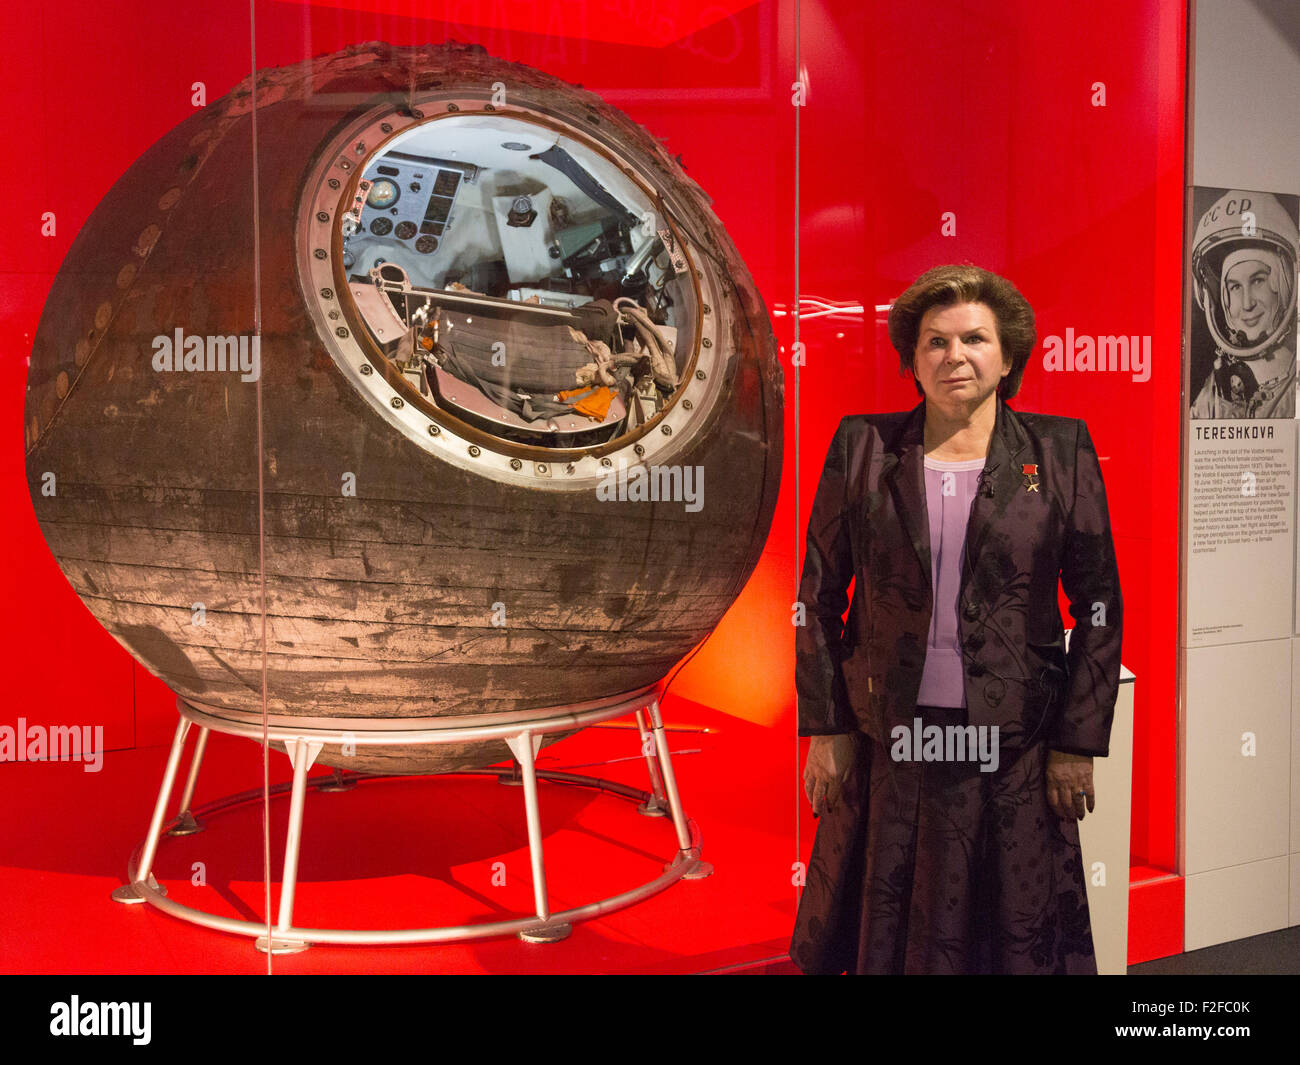 Londres, Reino Unido. 17/09/2015. Valentina Tereshkova se abre la exposición y se reunieron con el Vostok-6, la nave espacial que llevó al espacio. La exposición cosmonautas - el nacimiento de la era espacial se abre en el Museo de la ciencia el 18 de septiembre de 2015 y durará hasta el 13 de marzo de 2016. Foto de stock